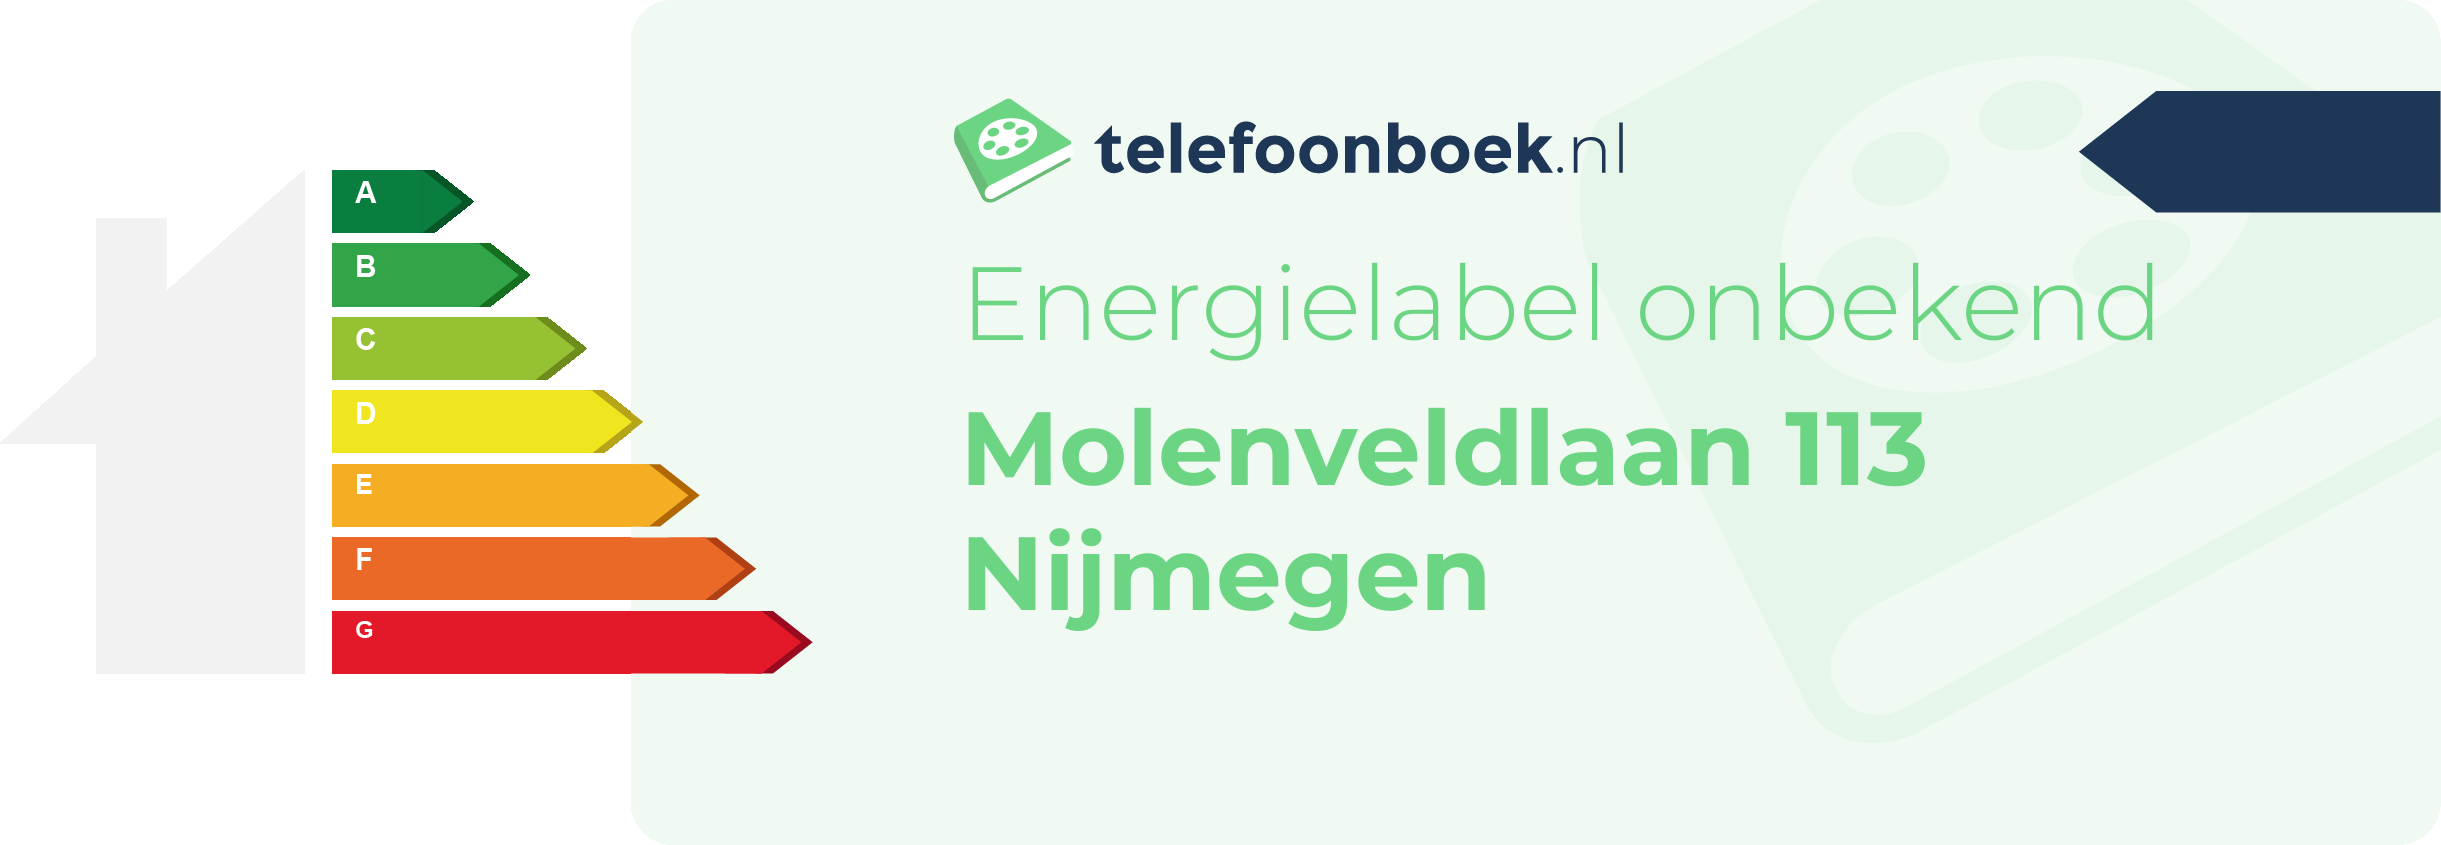 Energielabel Molenveldlaan 113 Nijmegen